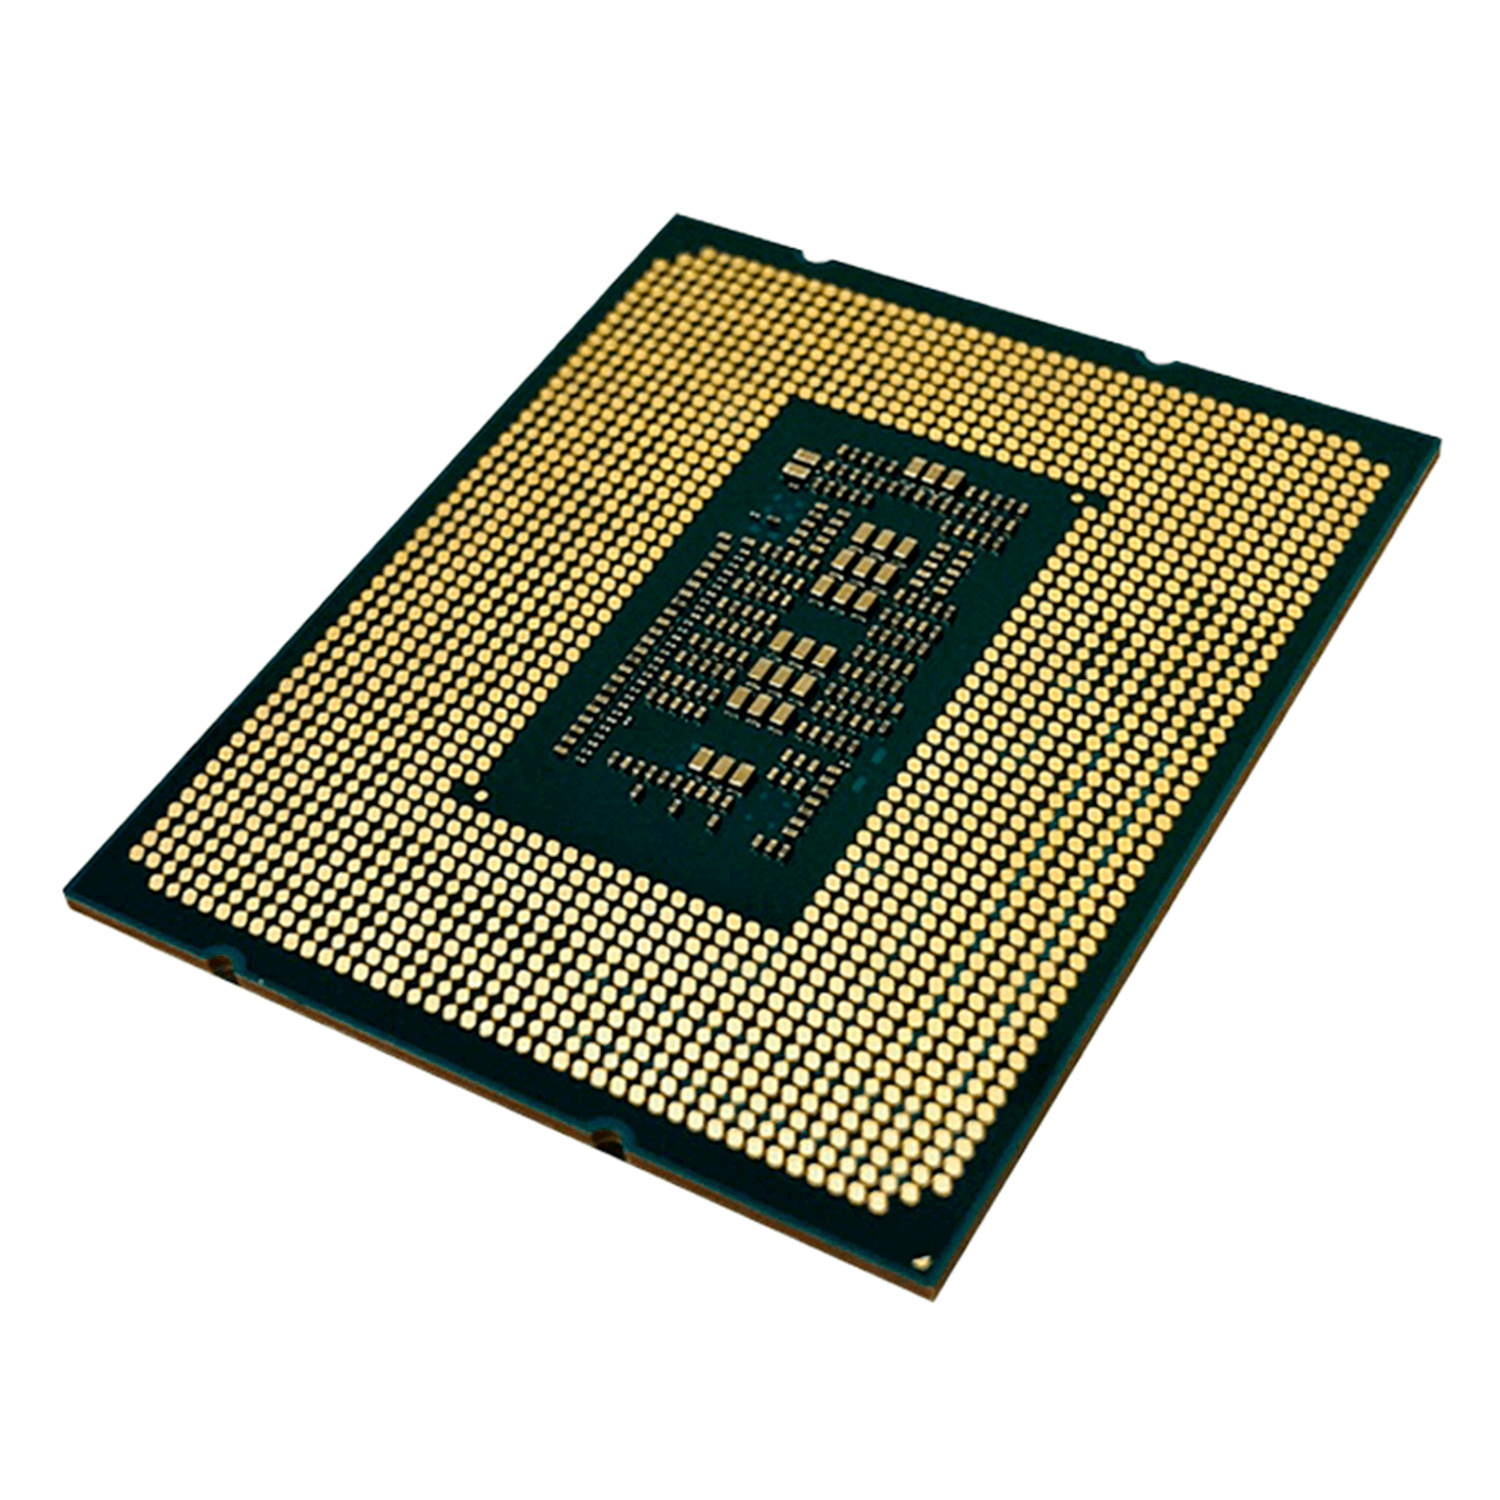 Processador Intel Core i7 11700 Socket LGA 1200 8 Core 16 Threads Cache 16MB
